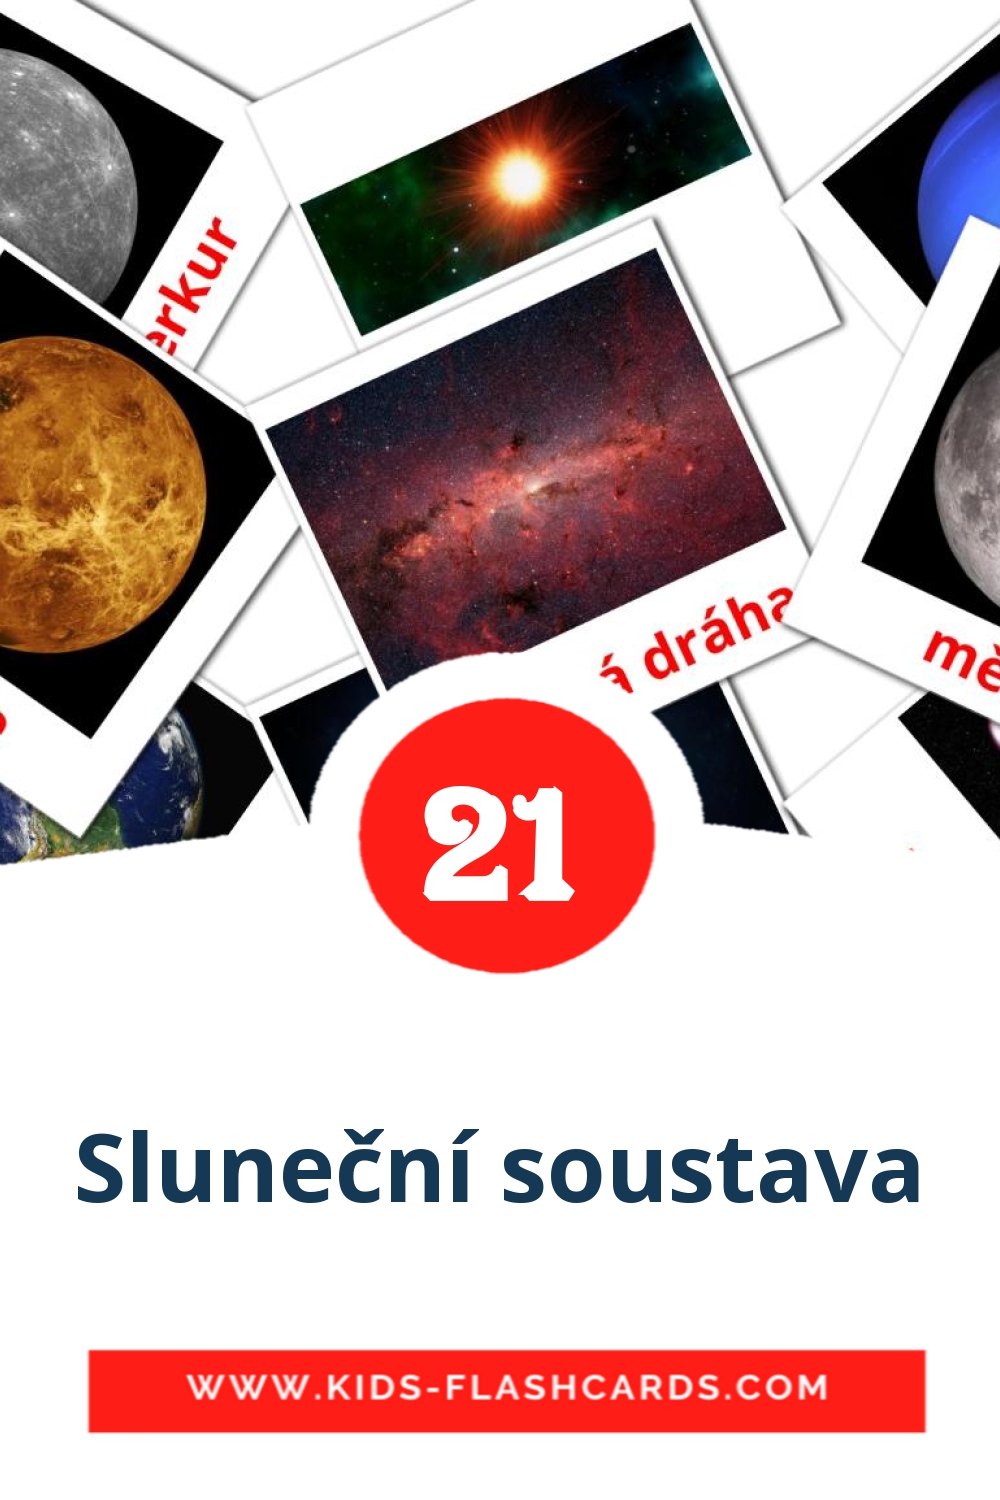 21 tarjetas didacticas de Sluneční soustava para el jardín de infancia en checo